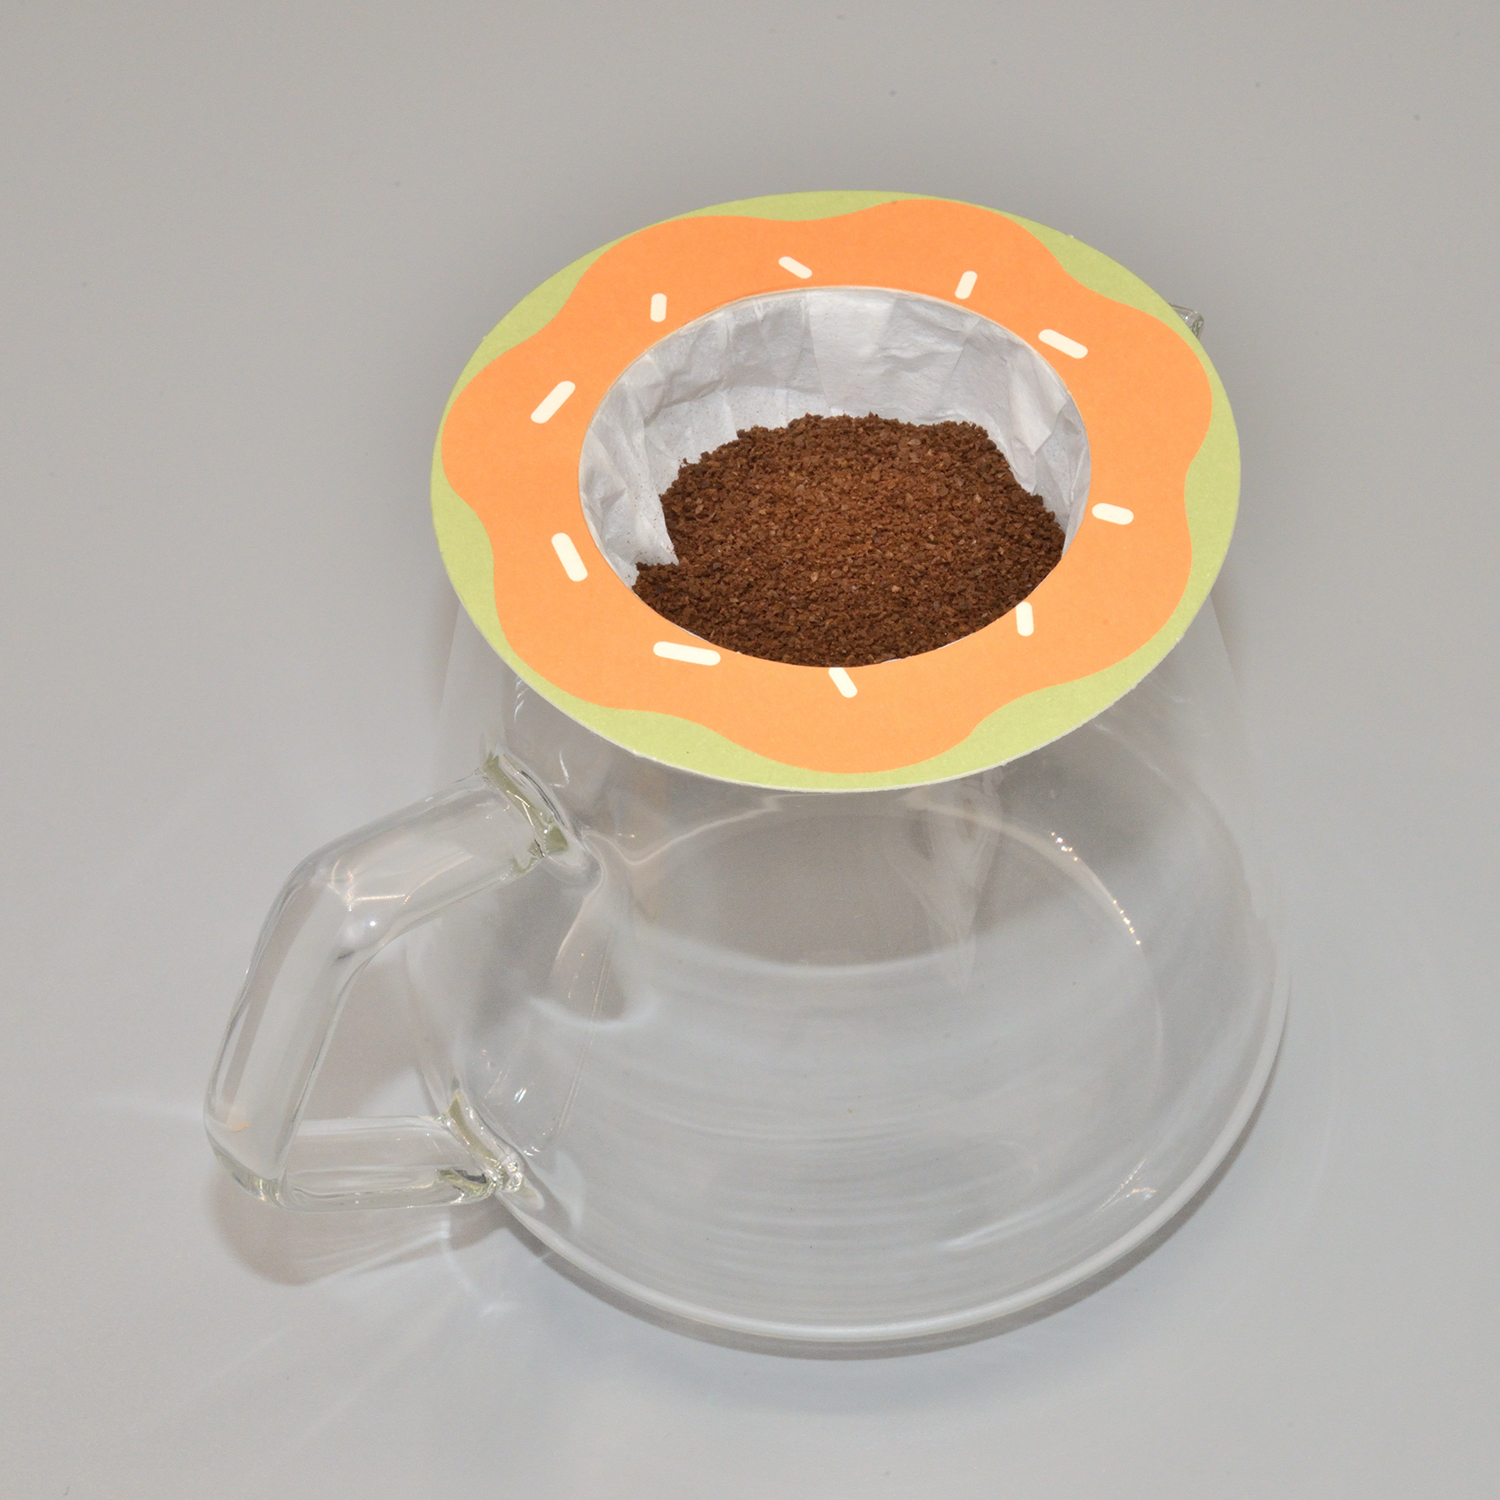 שקית קפה טפטוף Ufo Fedora מספקת עיצוב חינם